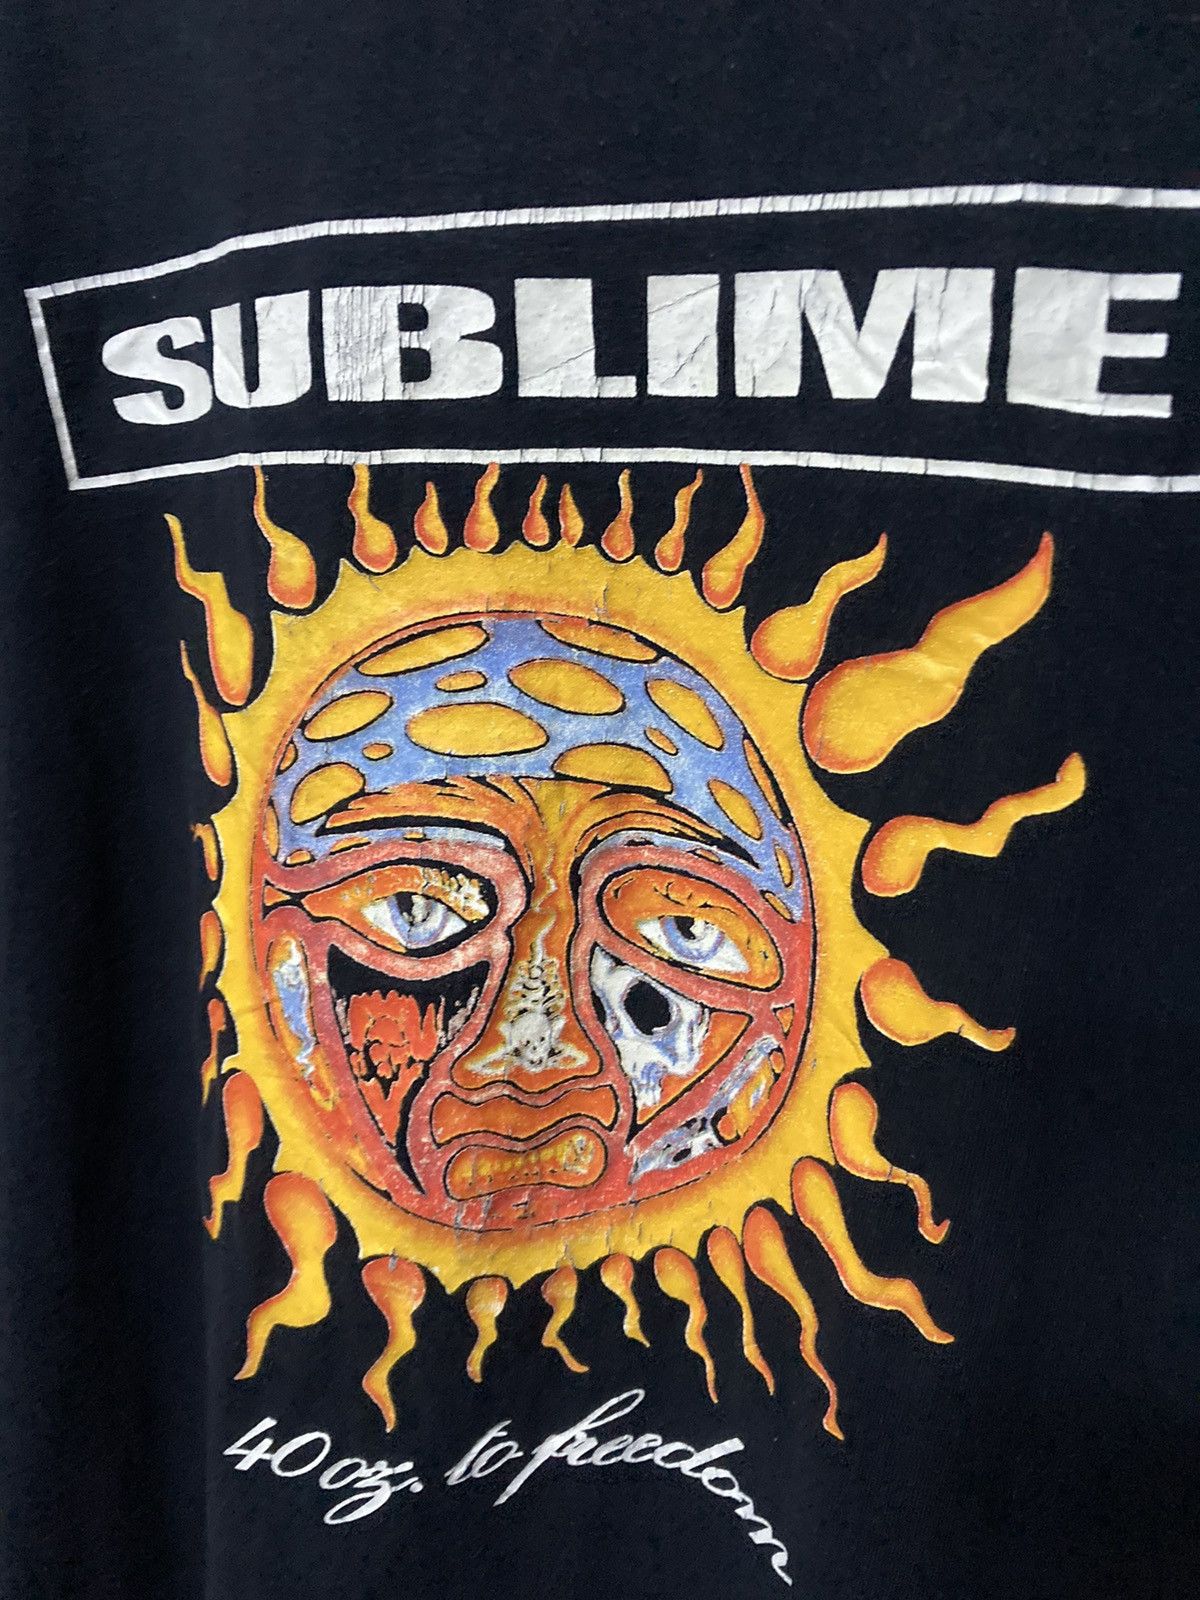 Vintage Sublime 40oz To Freedom Studio Album Tshirt - 4